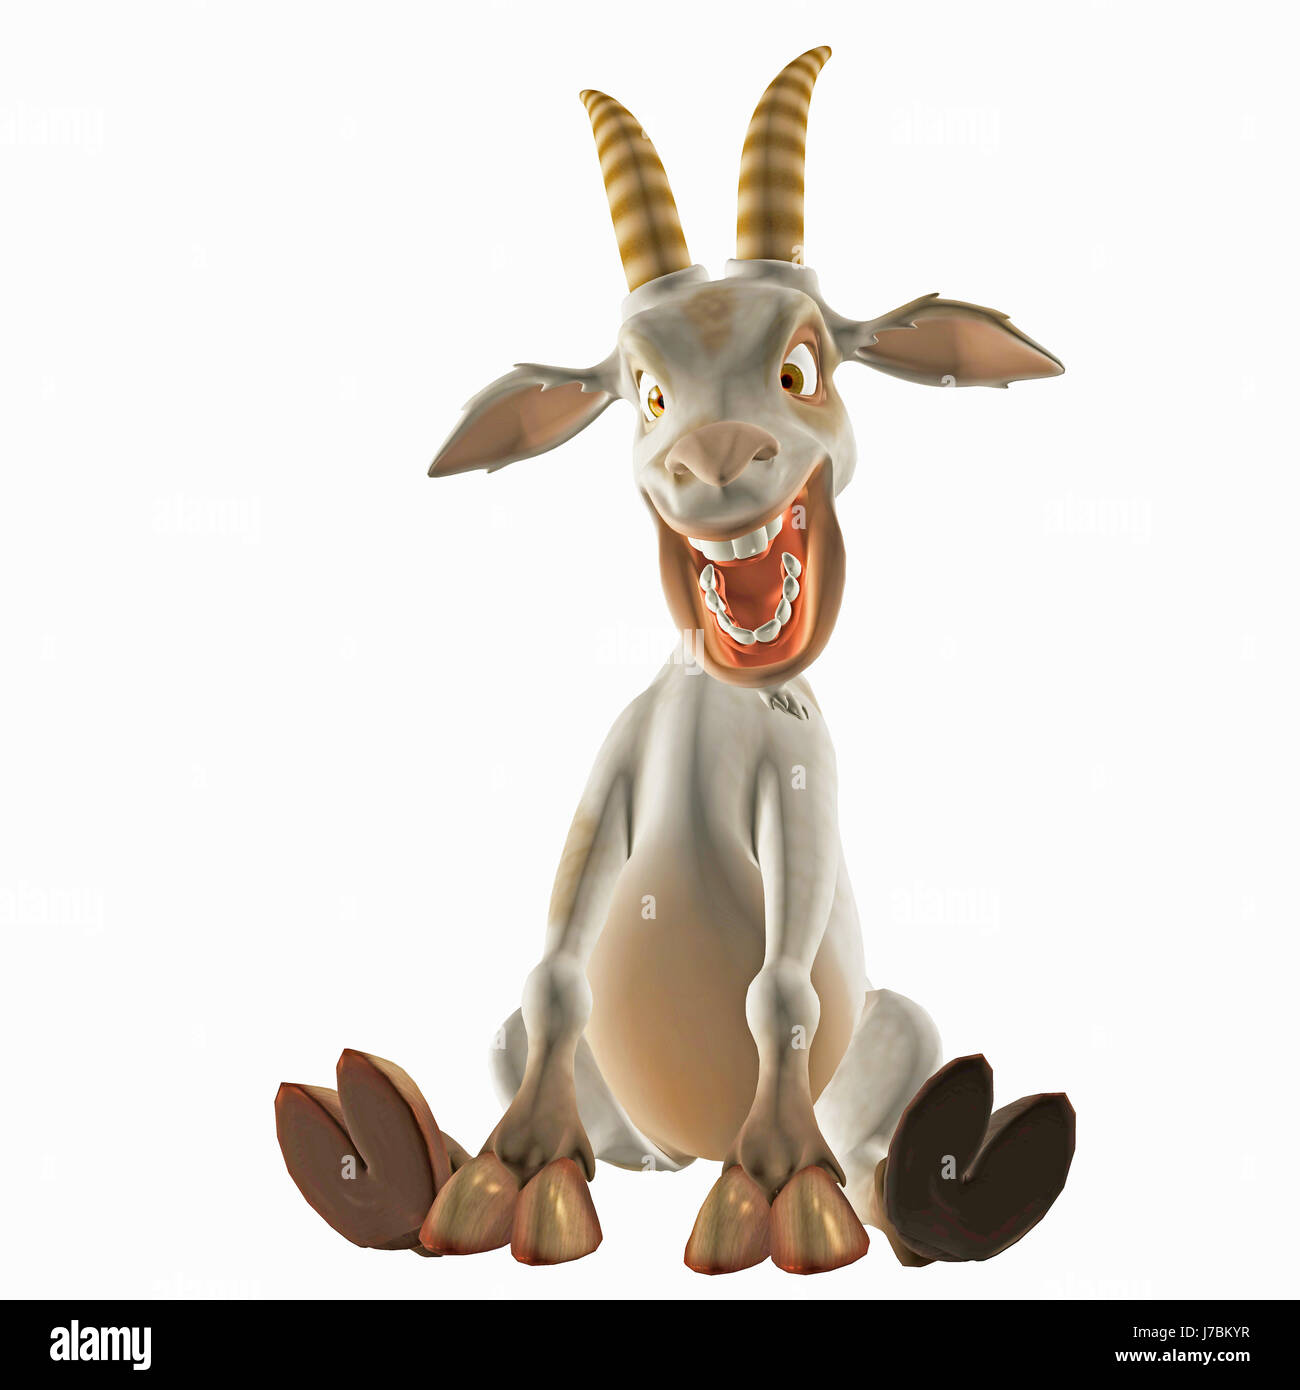 Funny Goat Cartoon Stock Photos & Funny Goat Cartoon Stock ...